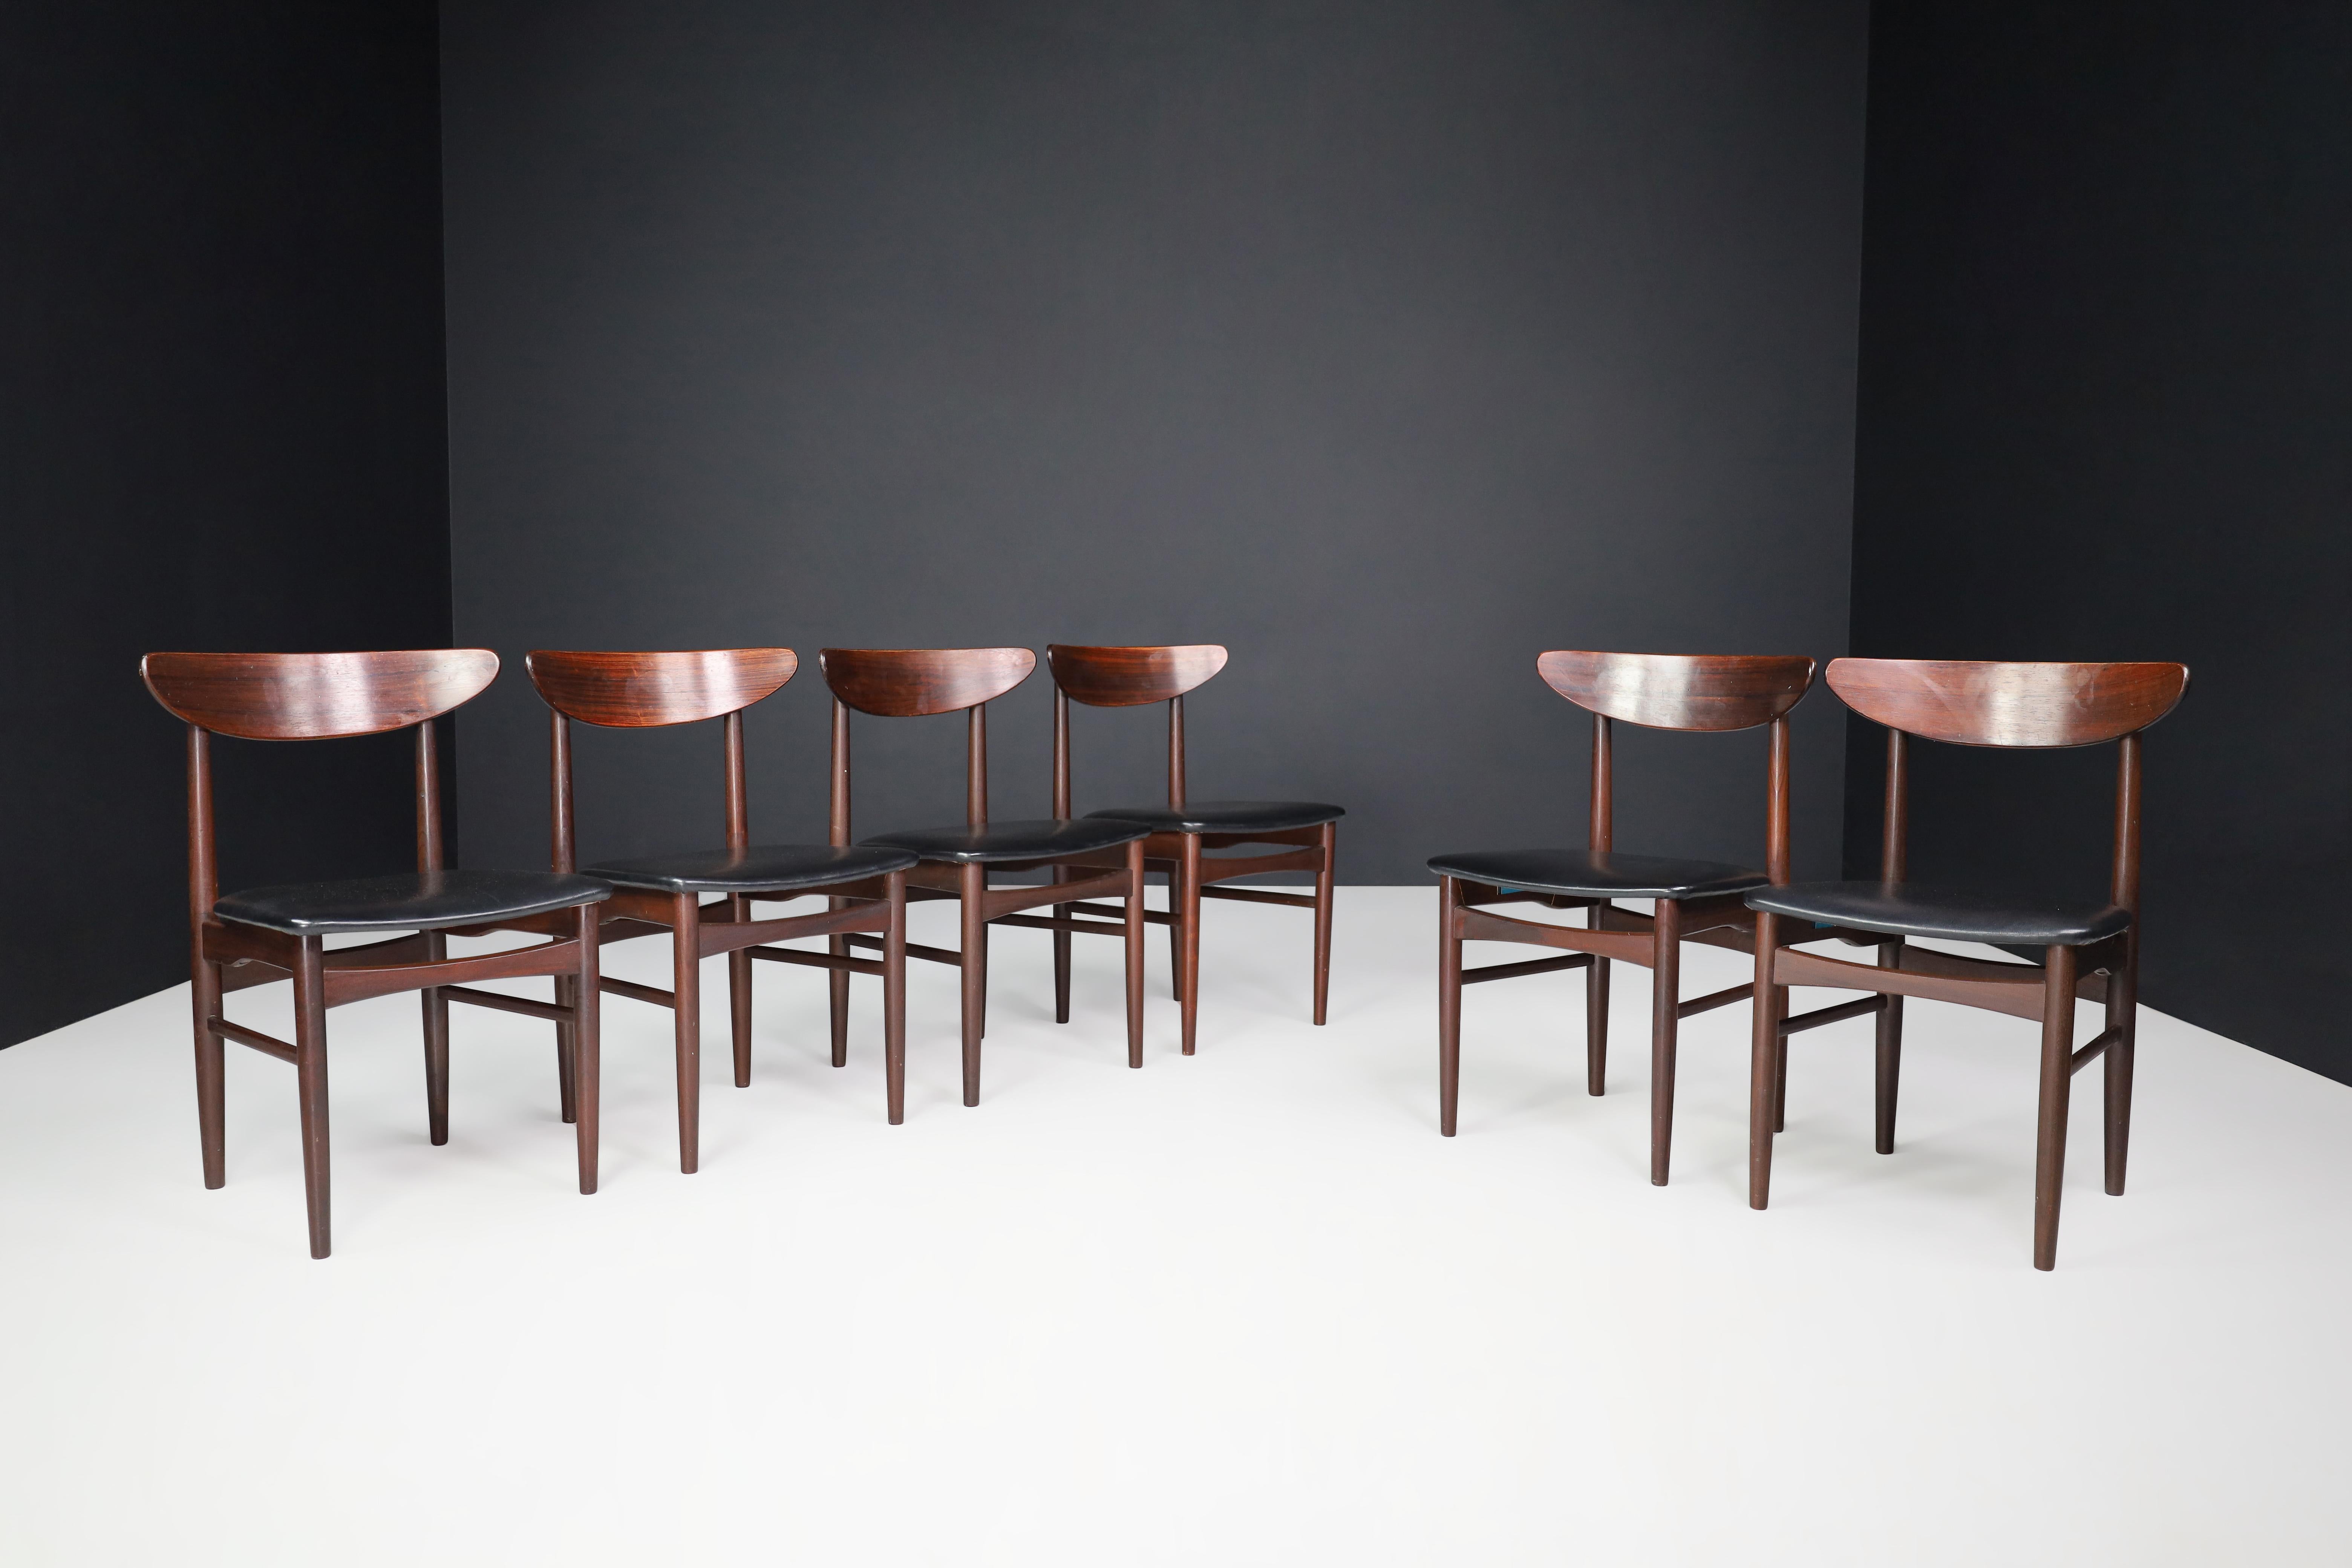 Dyrlund Esszimmerstühle aus Hartholz und schwarzem Leder, Dänemark 1960er Jahre.

Ein Satz von sechs dänischen Esszimmerstühlen von Dyrlund aus der Mitte des Jahrhunderts mit Hartholzrahmen und original schwarzem Lederbezug. Sie sind in